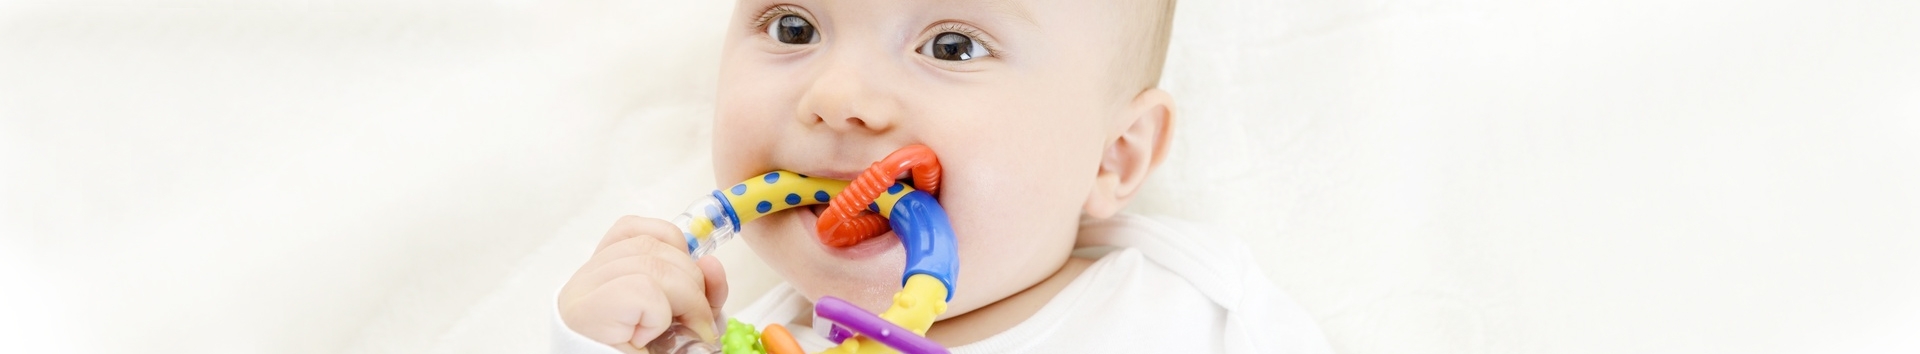 Mordidas de bebê: O que fazer e como evitar corretamente